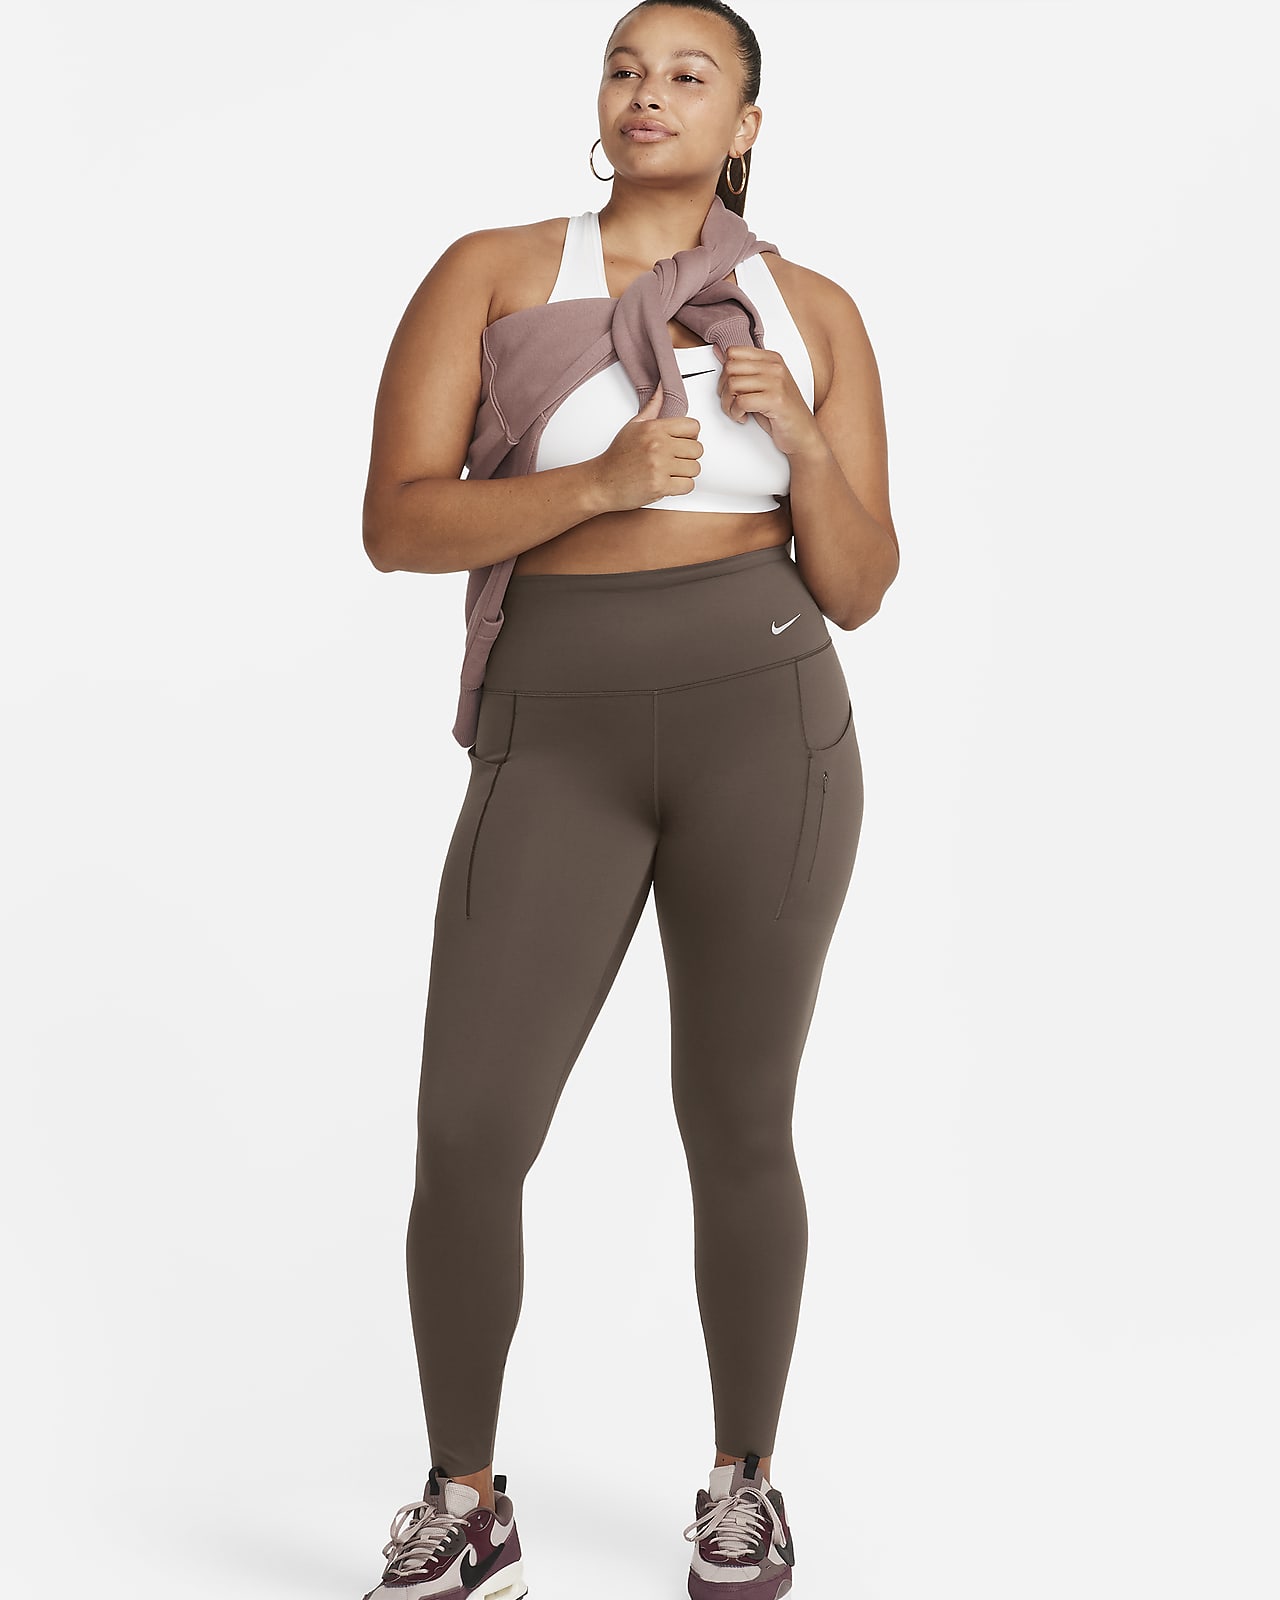 Notre guide des meilleurs leggings pour Femme. Nike FR